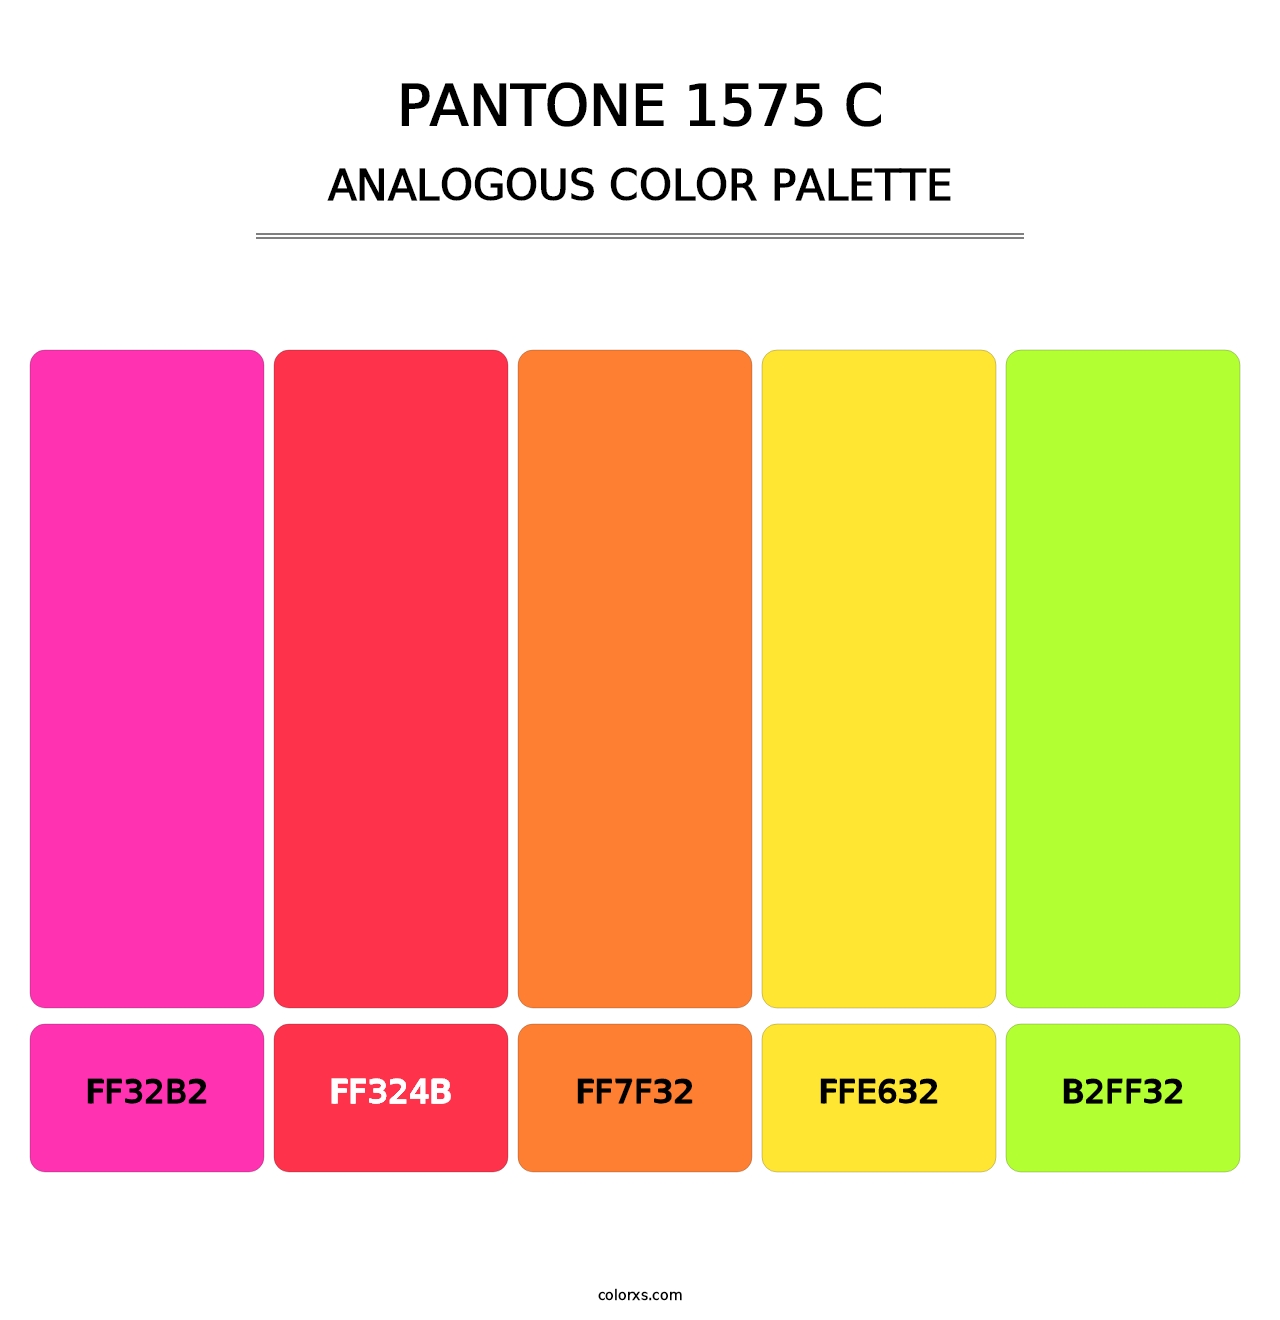 PANTONE 1575 C - Analogous Color Palette